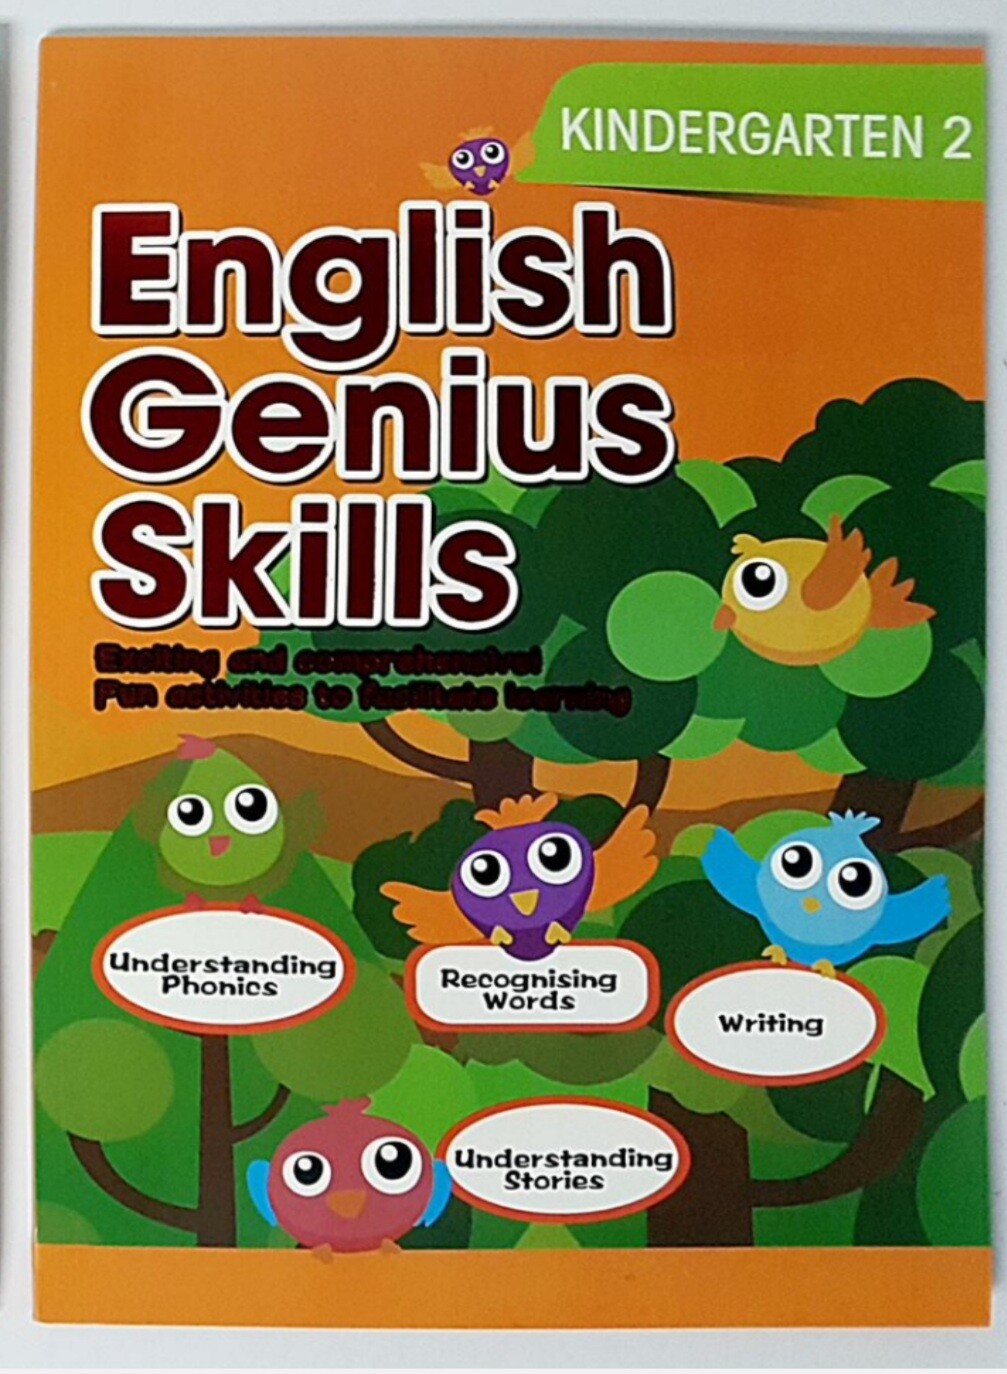 Kids Genius Skills Kindergarten 2